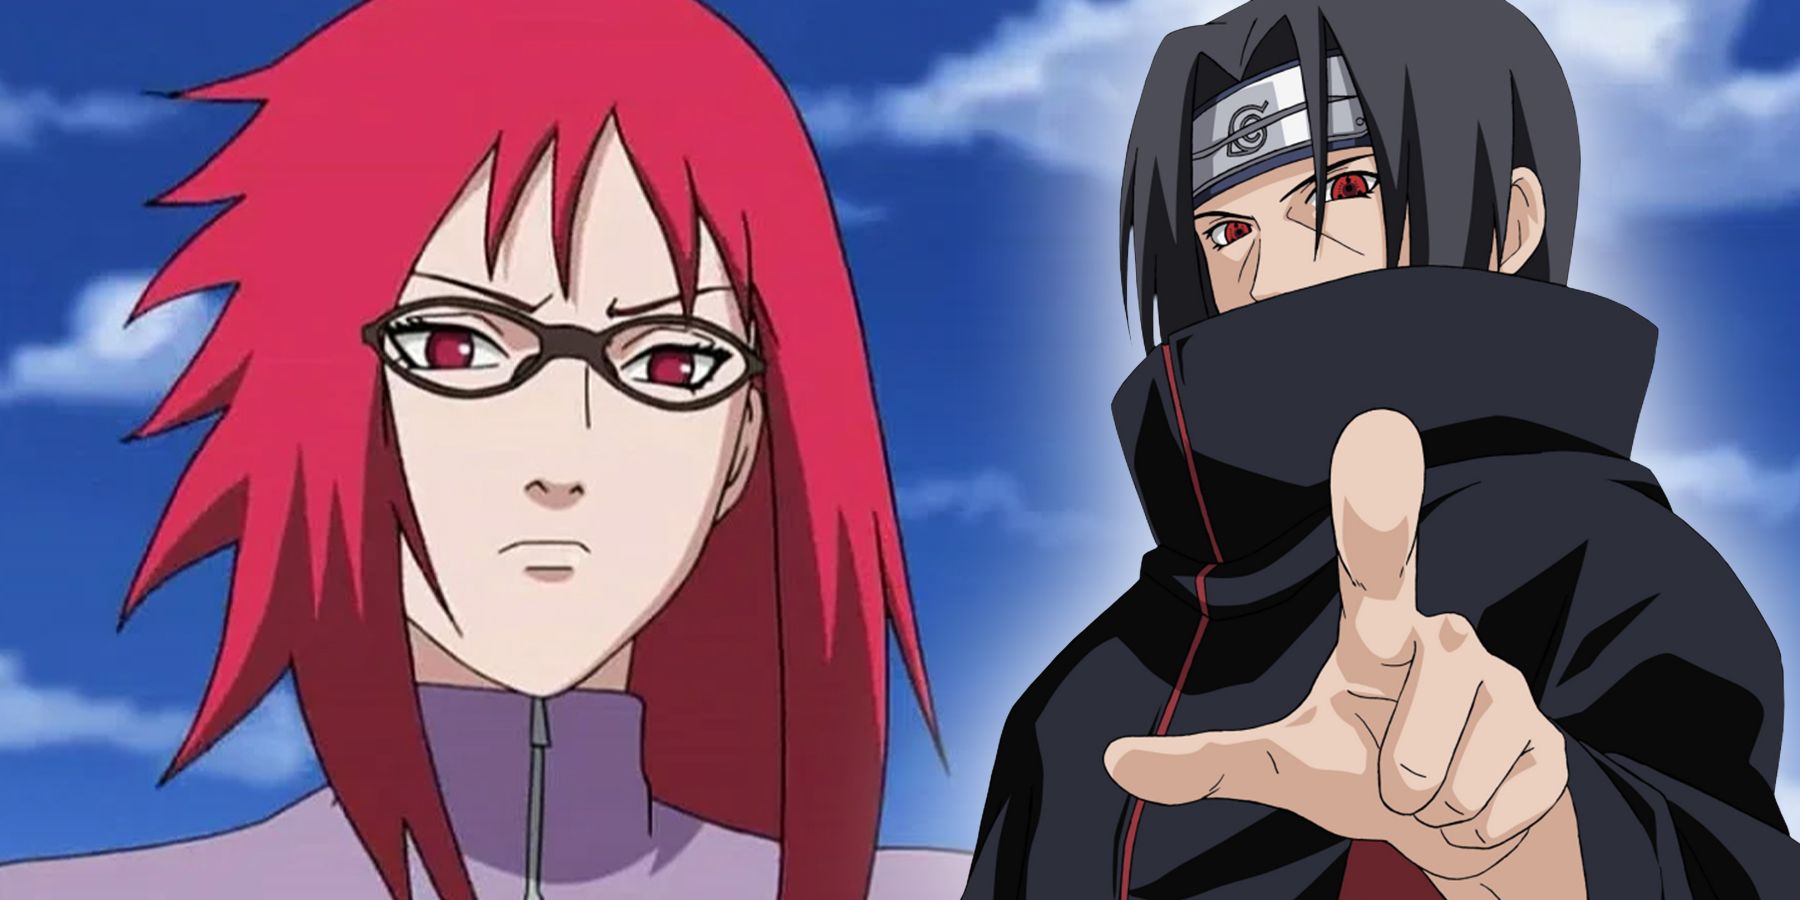 Itachi Uchiha and Karin Uzumaki from anime Naruto